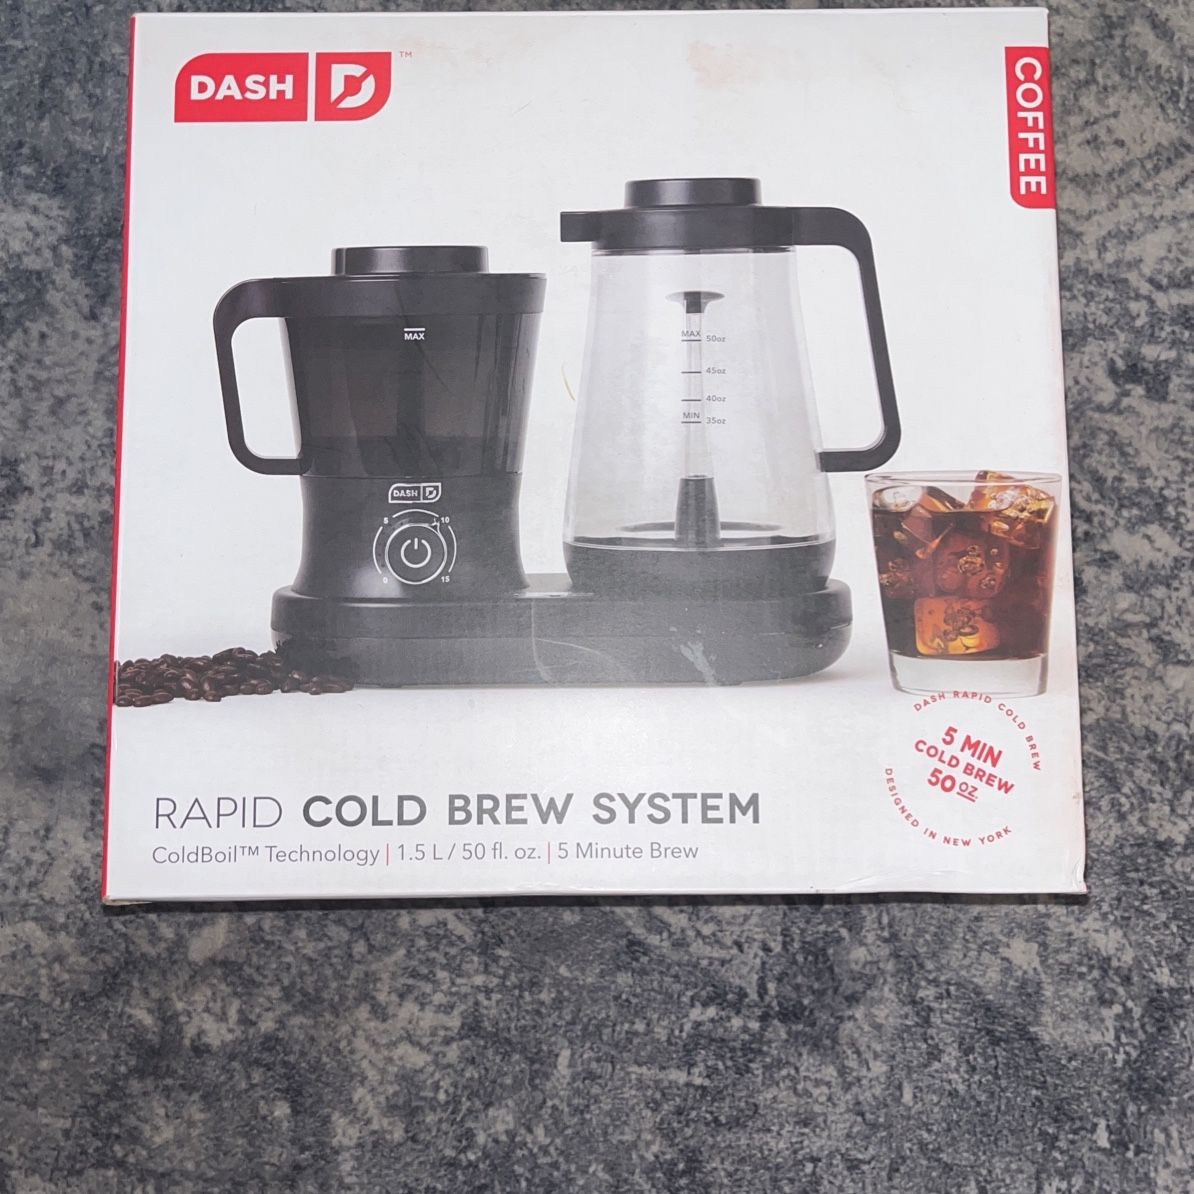 Dash Rapid Cold Brew Coffee Maker in Black